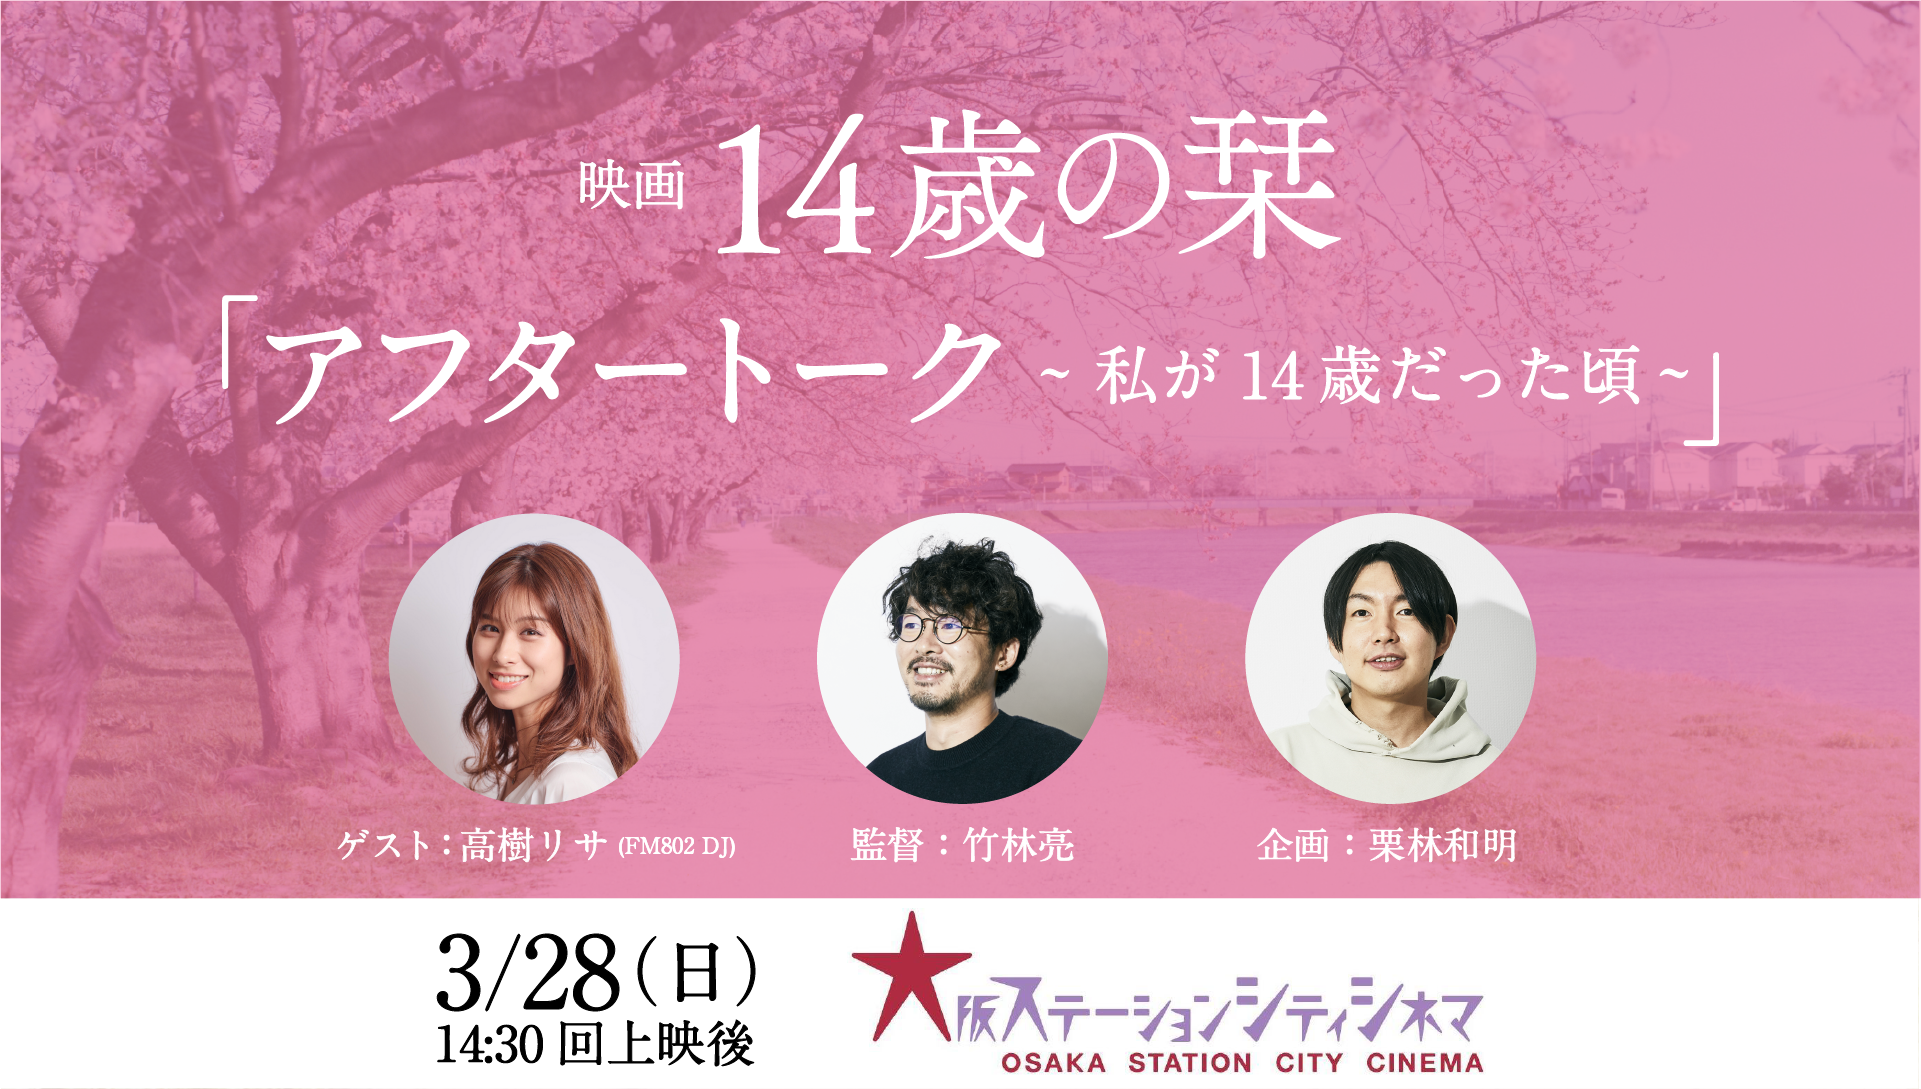 映画 14歳の栞 アフタートークが大阪にて開催決定 Fm802の人気dj 高樹リサがゲストとして登場 株式会社チョコレイトのプレスリリース